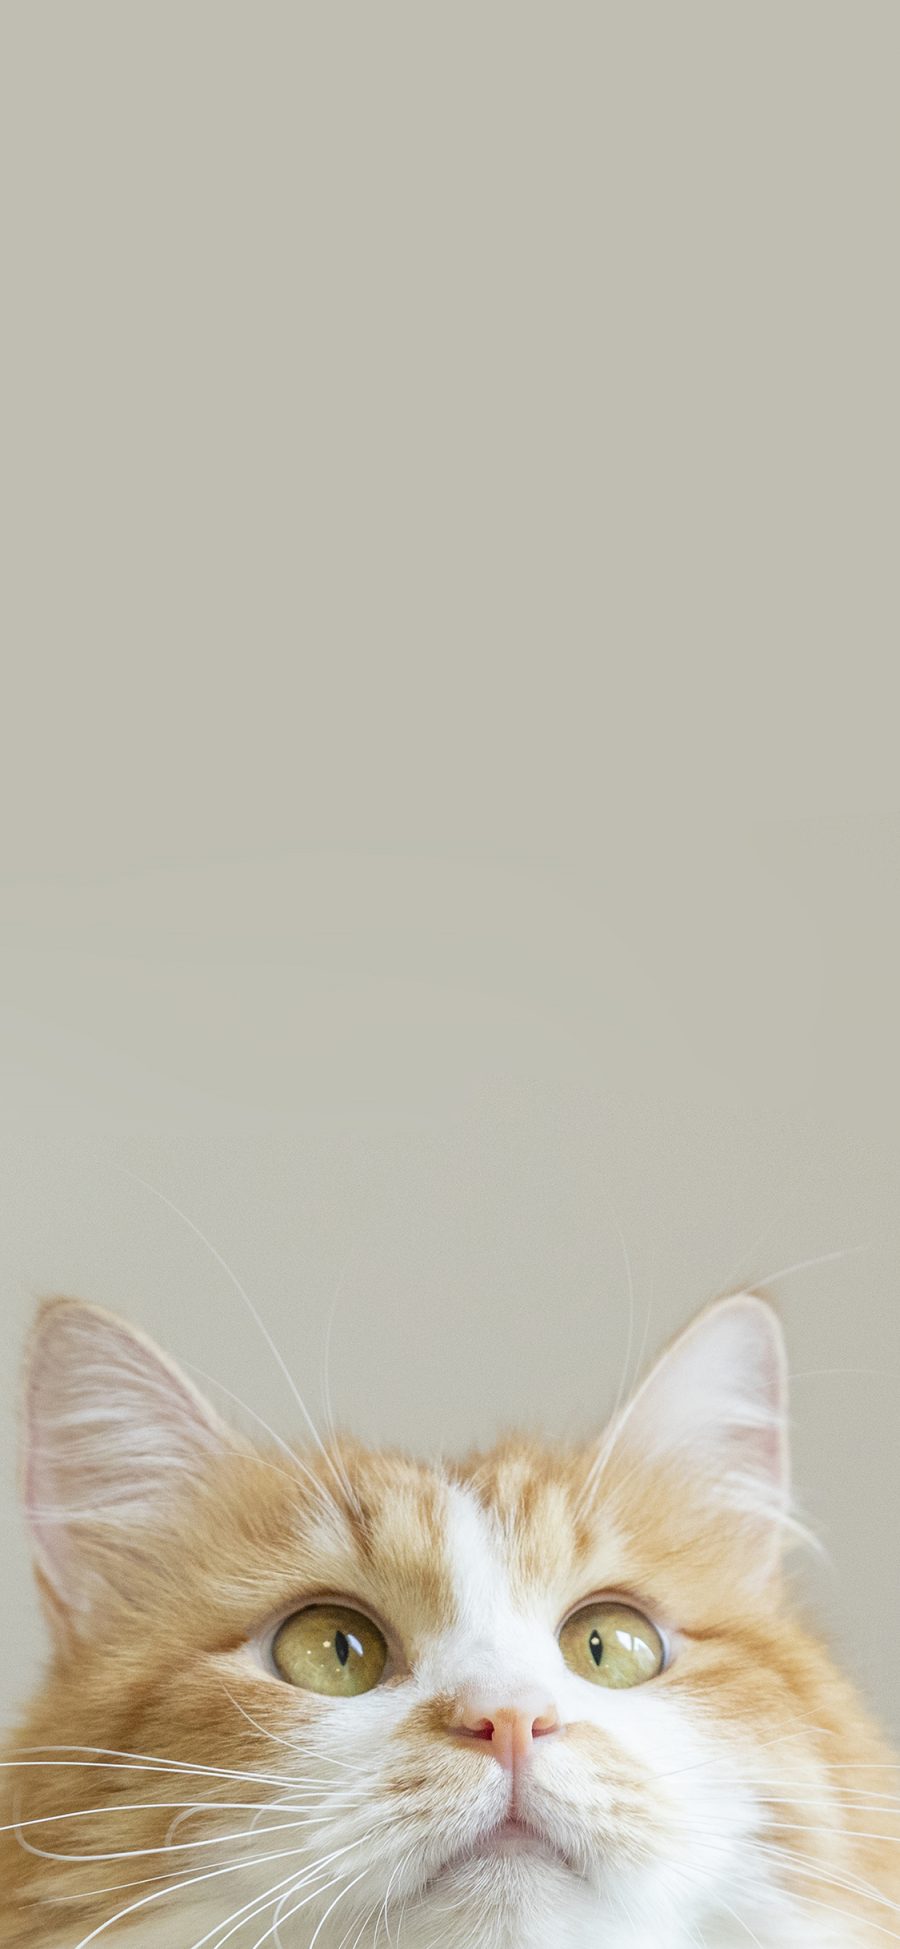 [2436×1125]猫咪 橘猫 肥胖 宠物 苹果手机壁纸图片